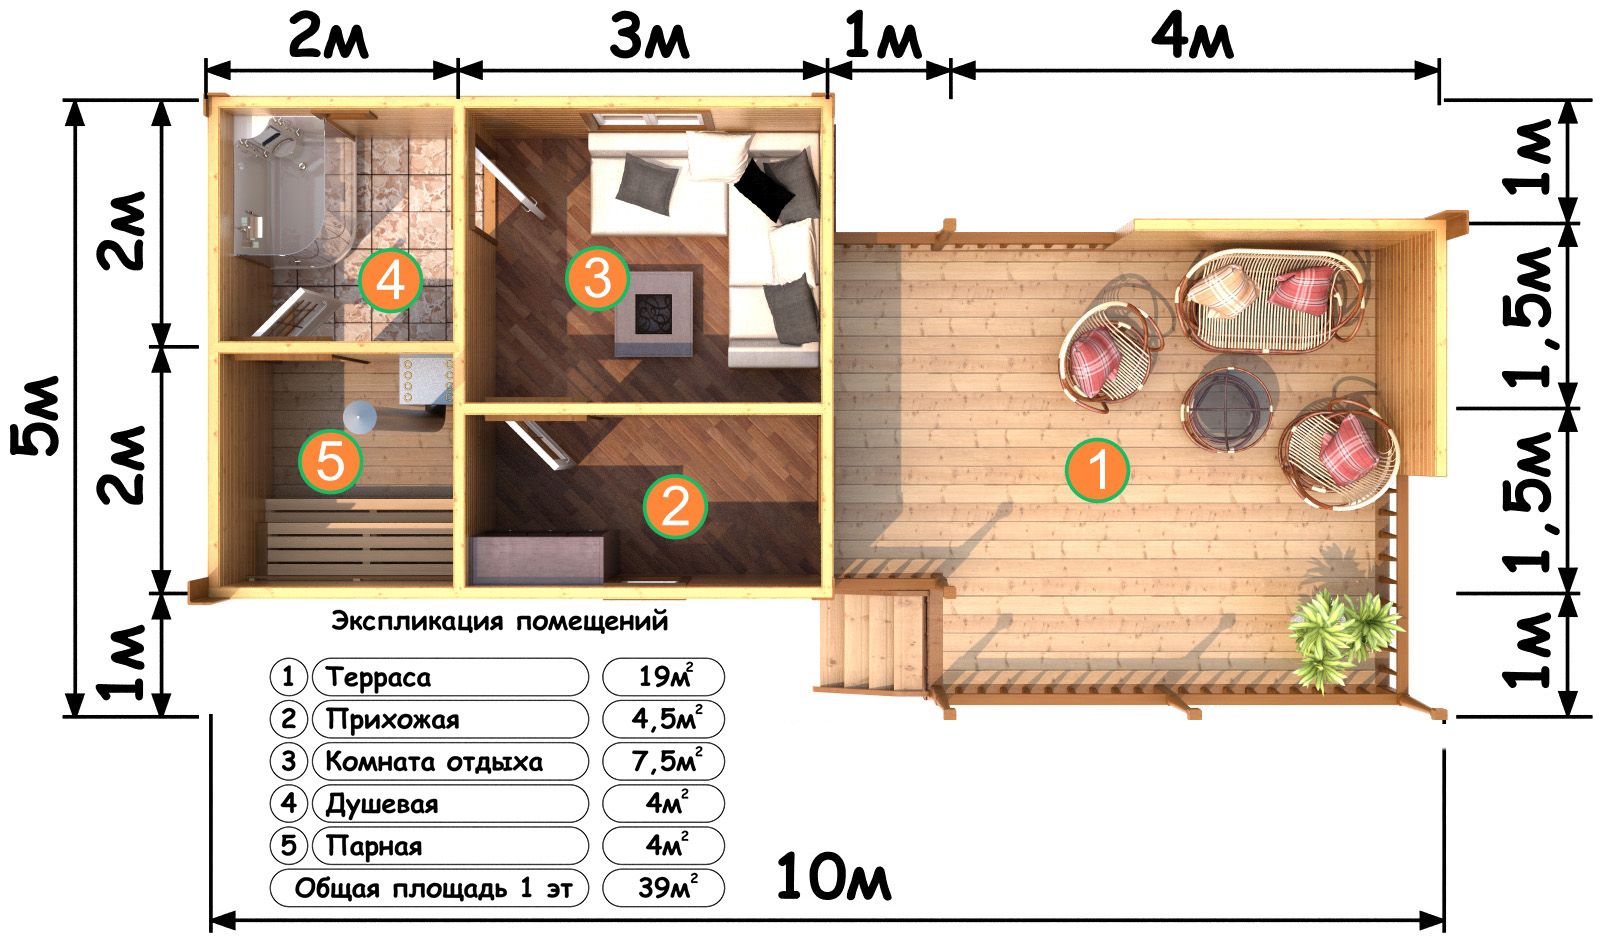 Планировка бани (85 фото): лучшие планы для русской бани и сауны площадью 5х6 и 5х5 м, варианты с бассейном внутри, мойка и парилка отдельно